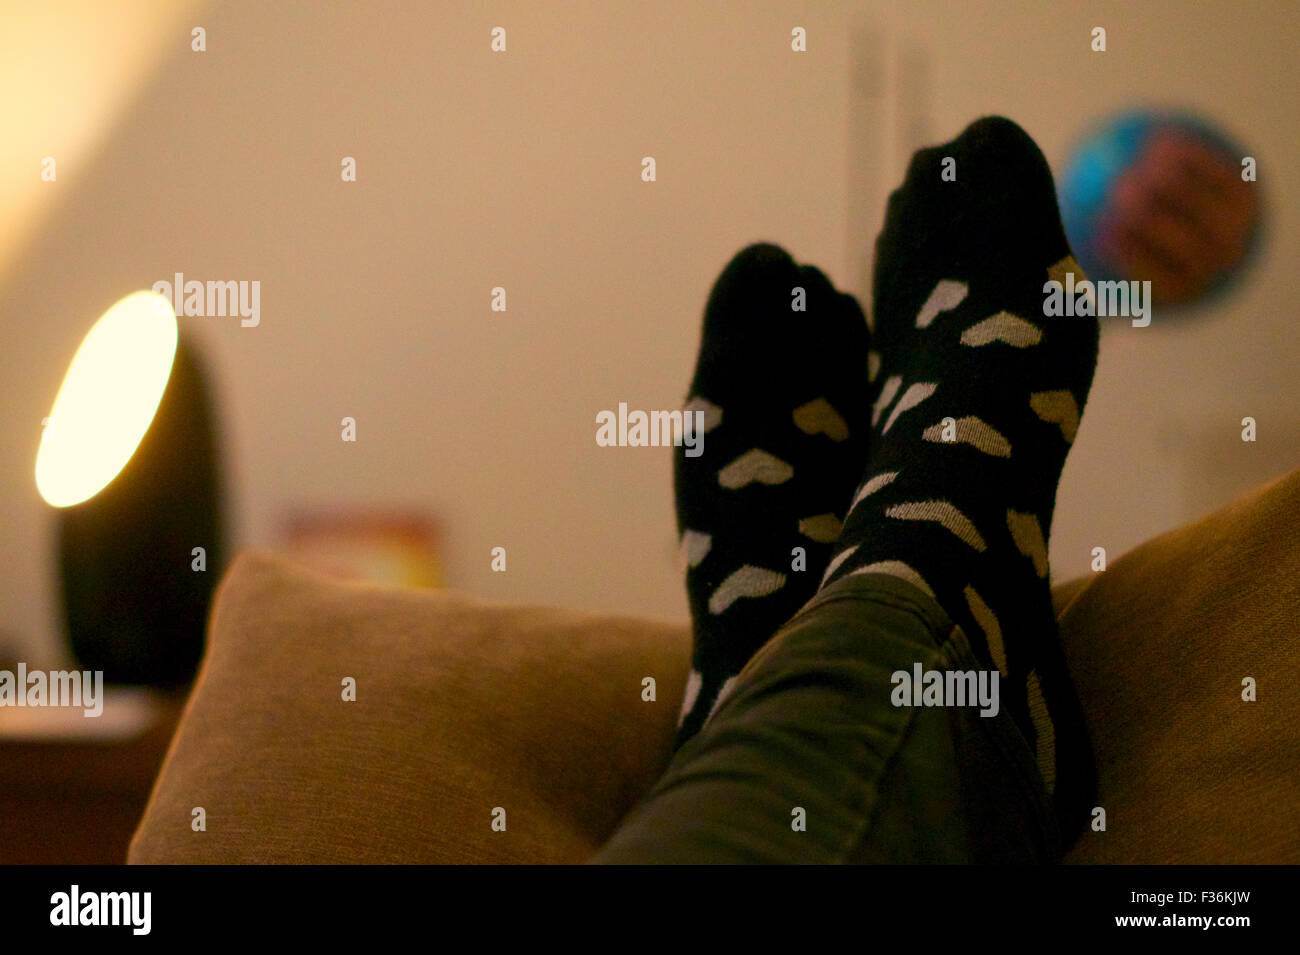 Füße mit Socken ruht auf Kissen, mit Licht im Hintergrund Stockfotografie -  Alamy